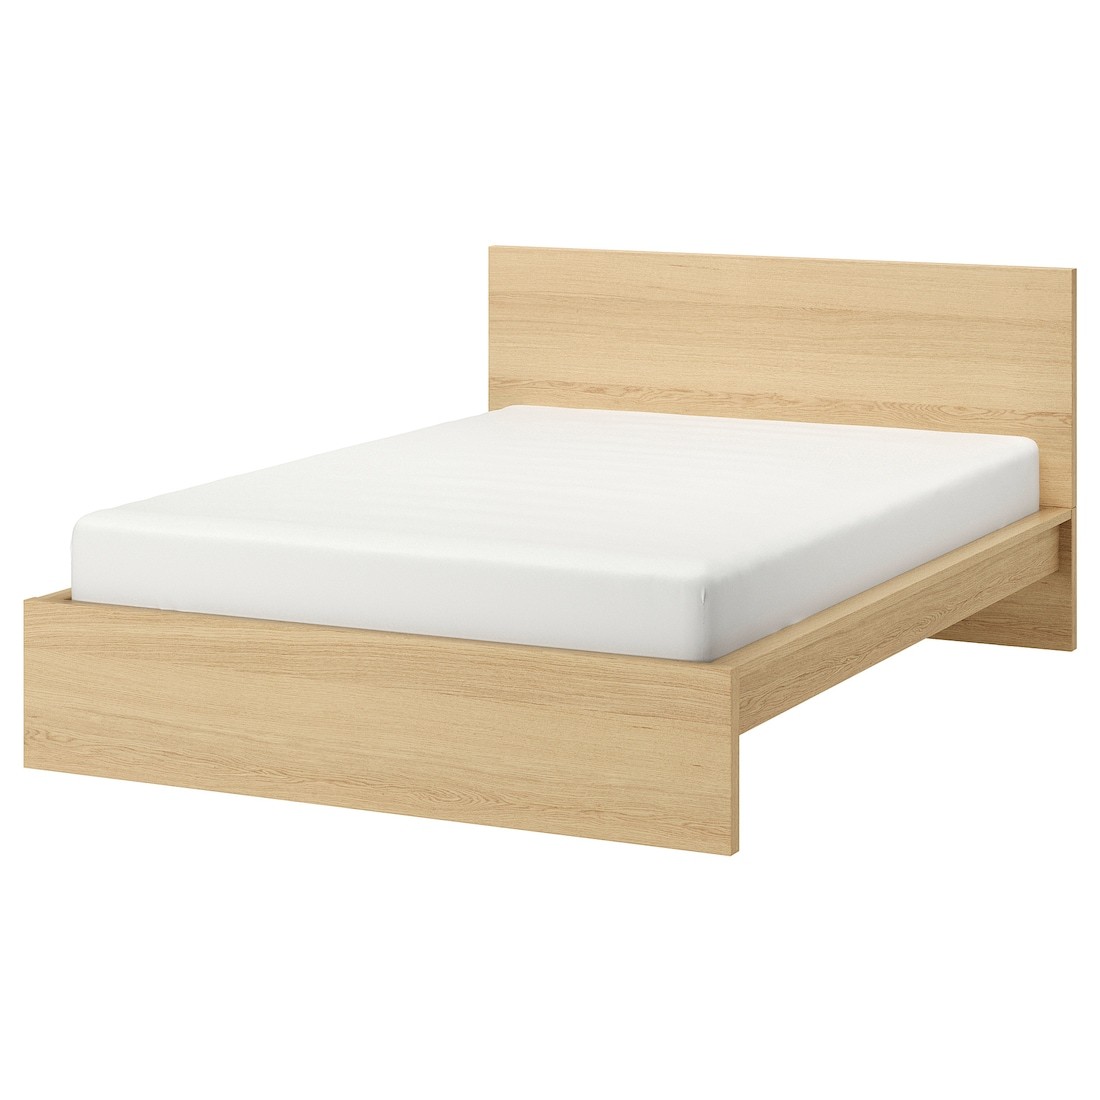 MALM МАЛЬМ Ліжко двоспальне, високе, шпон дуба білений / Lönset, 180x200 см